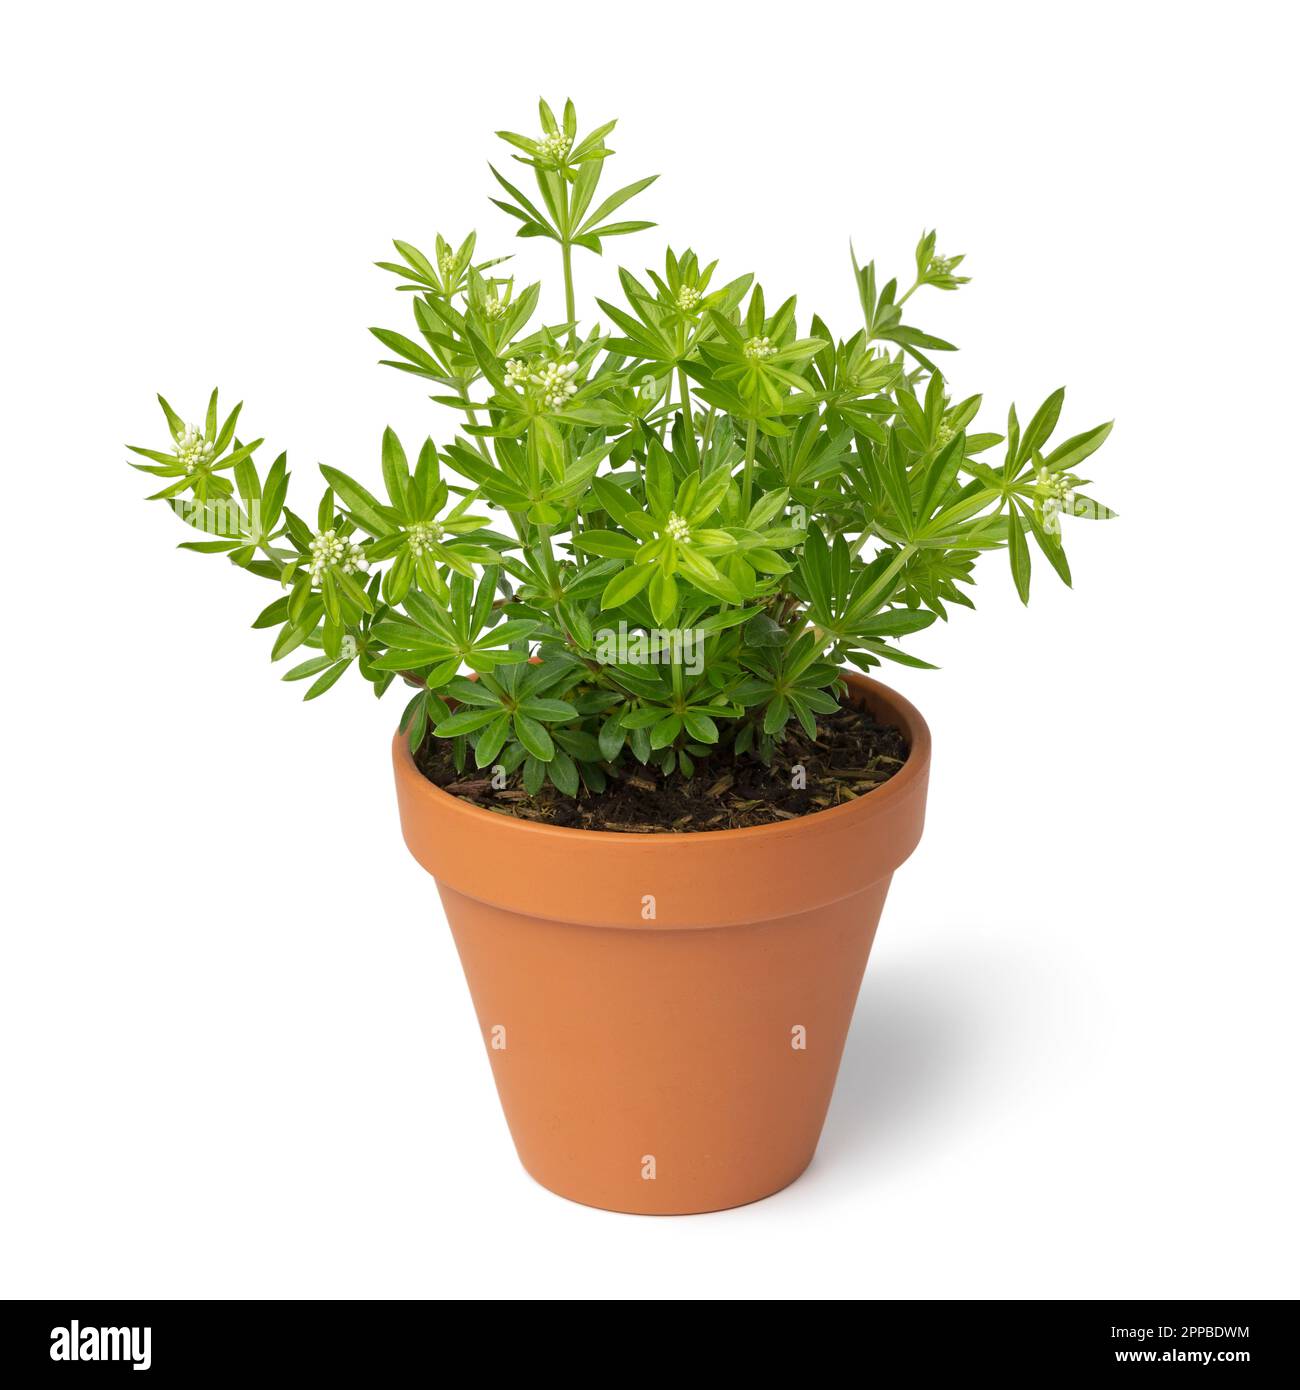 Pflanztopf mit frischer grüner, süßer Holzfällerpflanze mit weißen Knospen, isoliert auf weißem Hintergrund Stockfoto